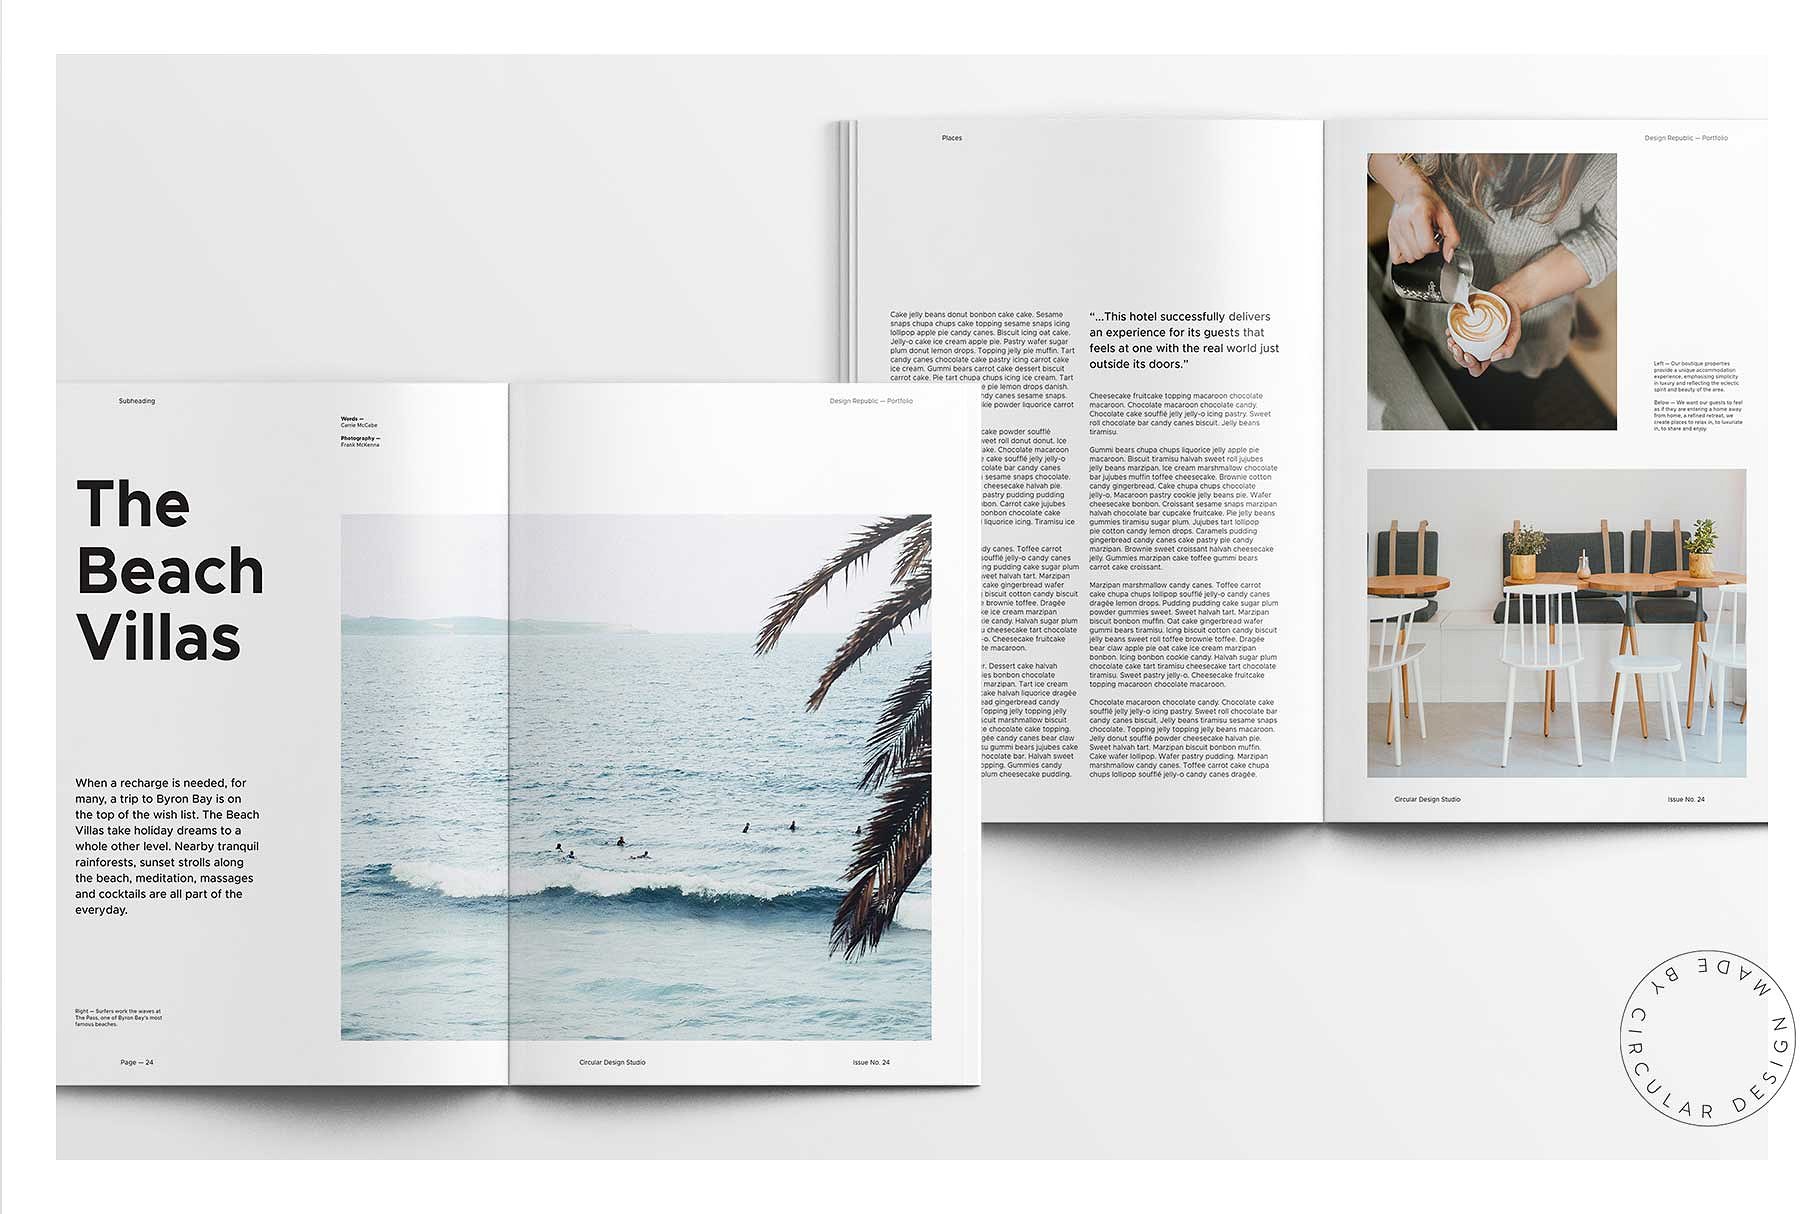 第一素材下午茶：时尚简约风格的画册手册宣传册楼书InDesign设计模板插图(6)